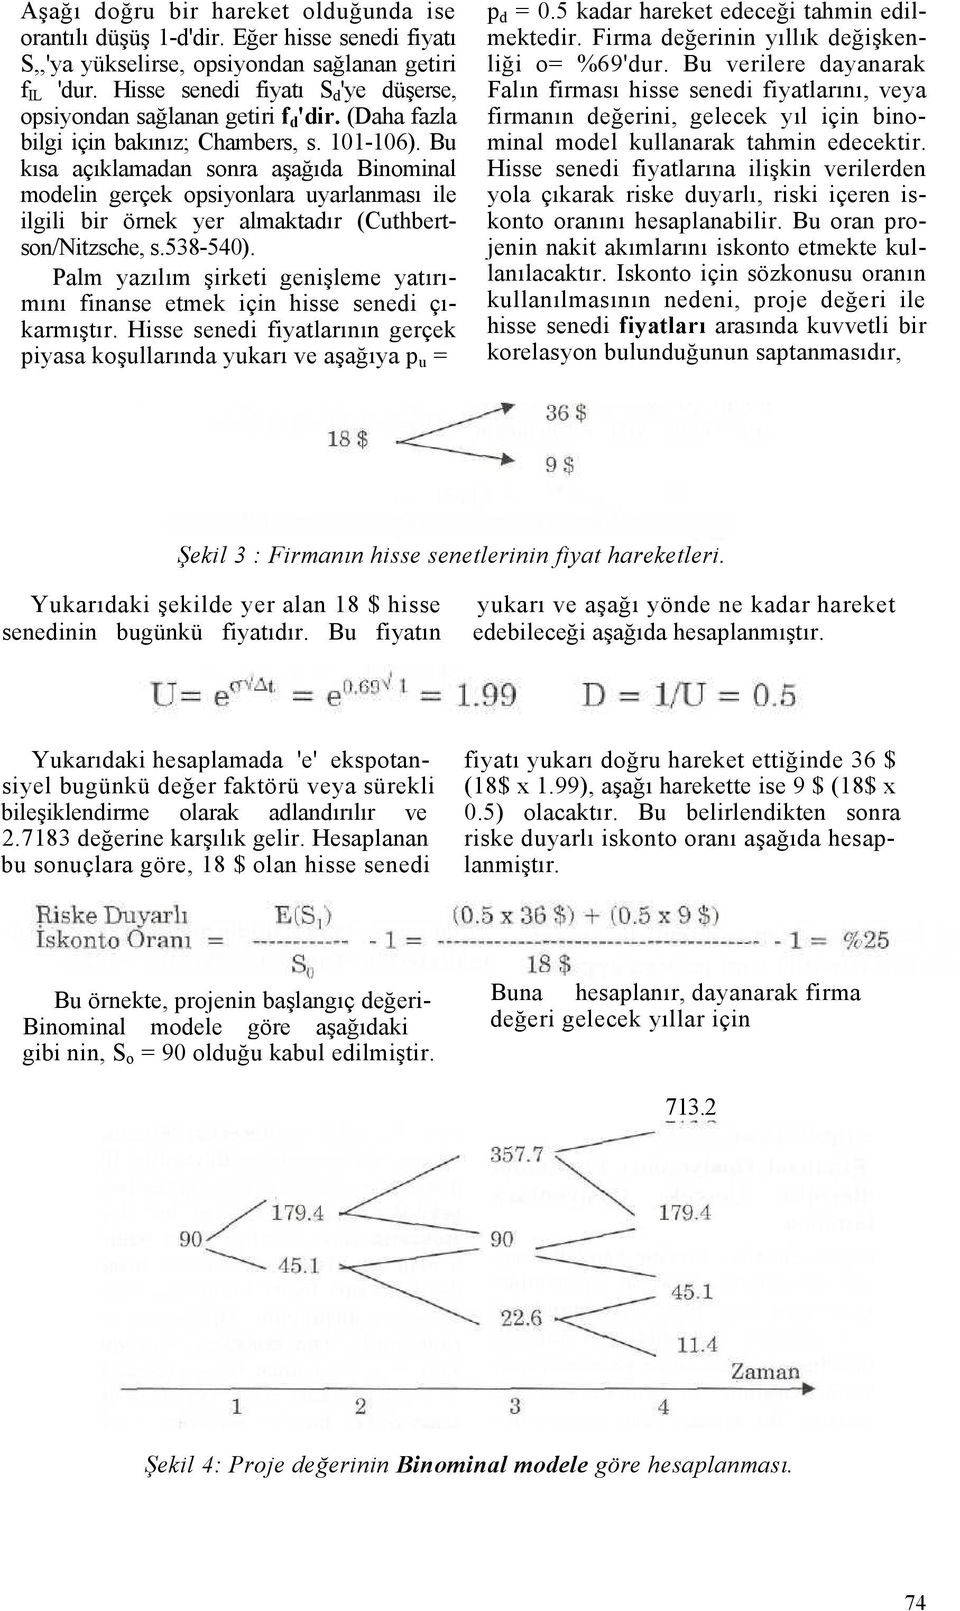 Bu kısa açıklamadan sonra aşağıda Binominal modelin gerçek opsiyonlara uyarlanması ile ilgili bir örnek yer almaktadır (Cuthbertson/Nitzsche, s.538-540).